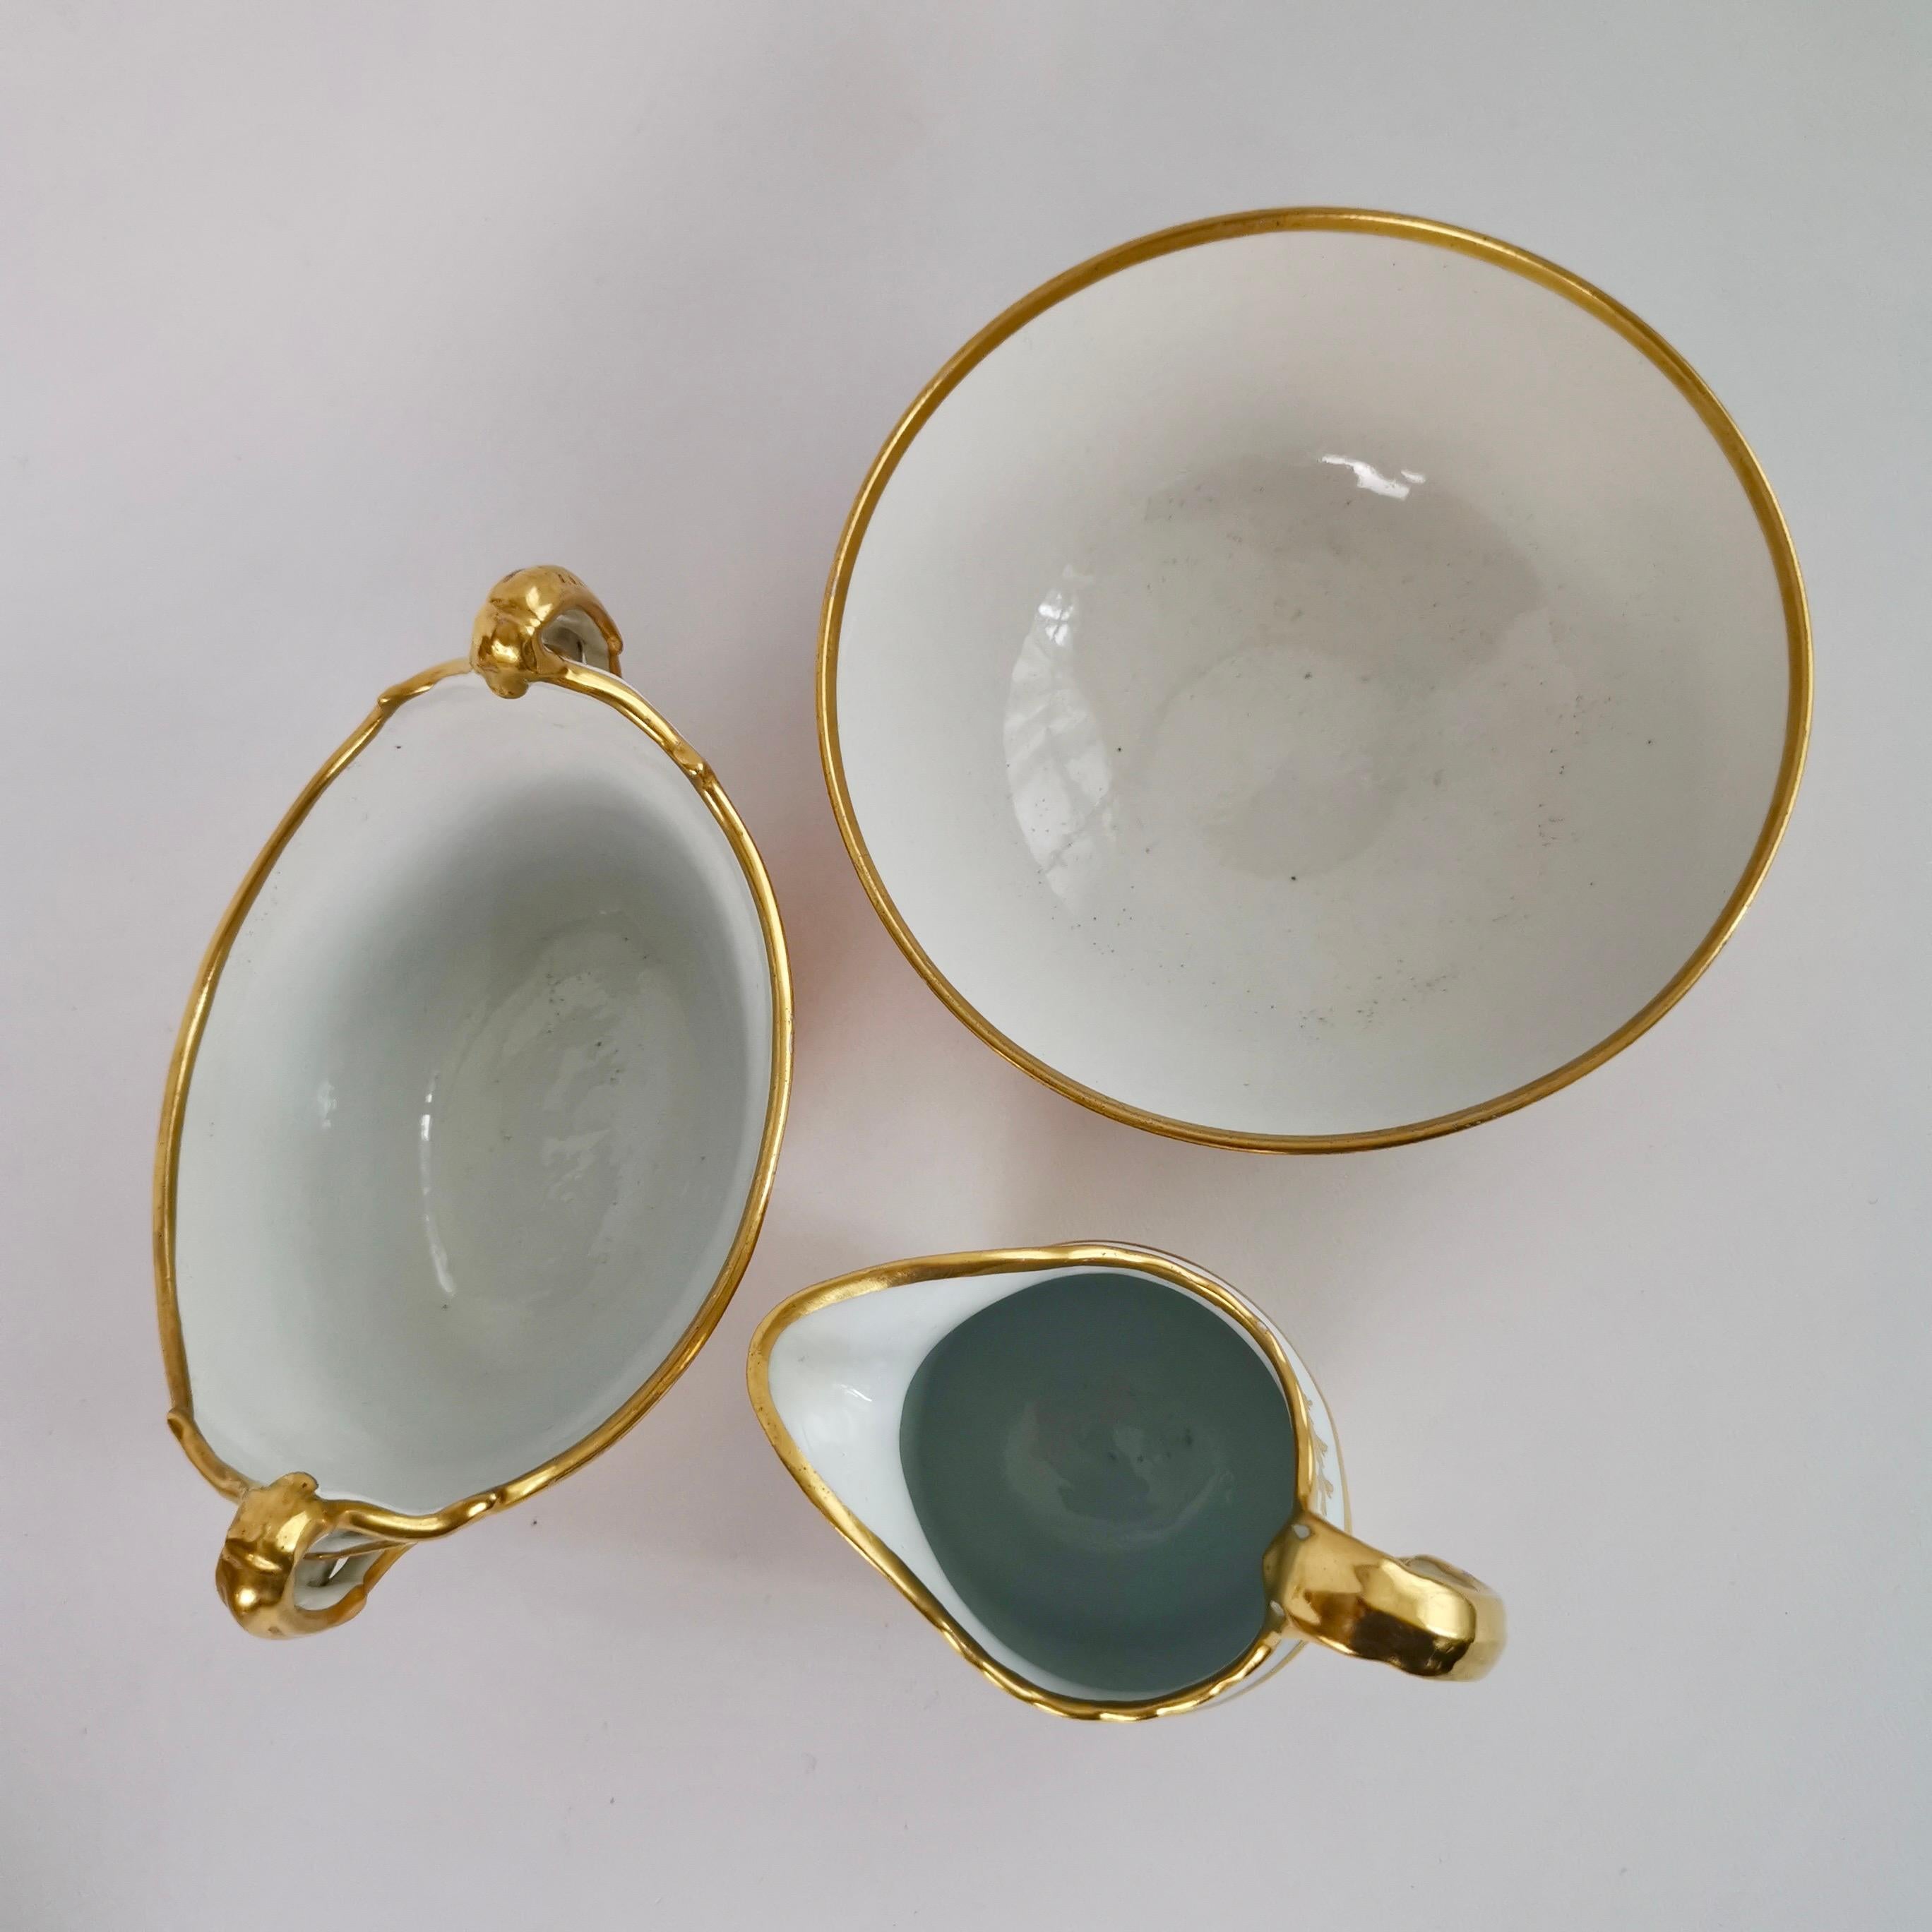 Porcelain Barr Flight and Barr Tea Service, Peach with Gilt Greek Keys, ca 1804